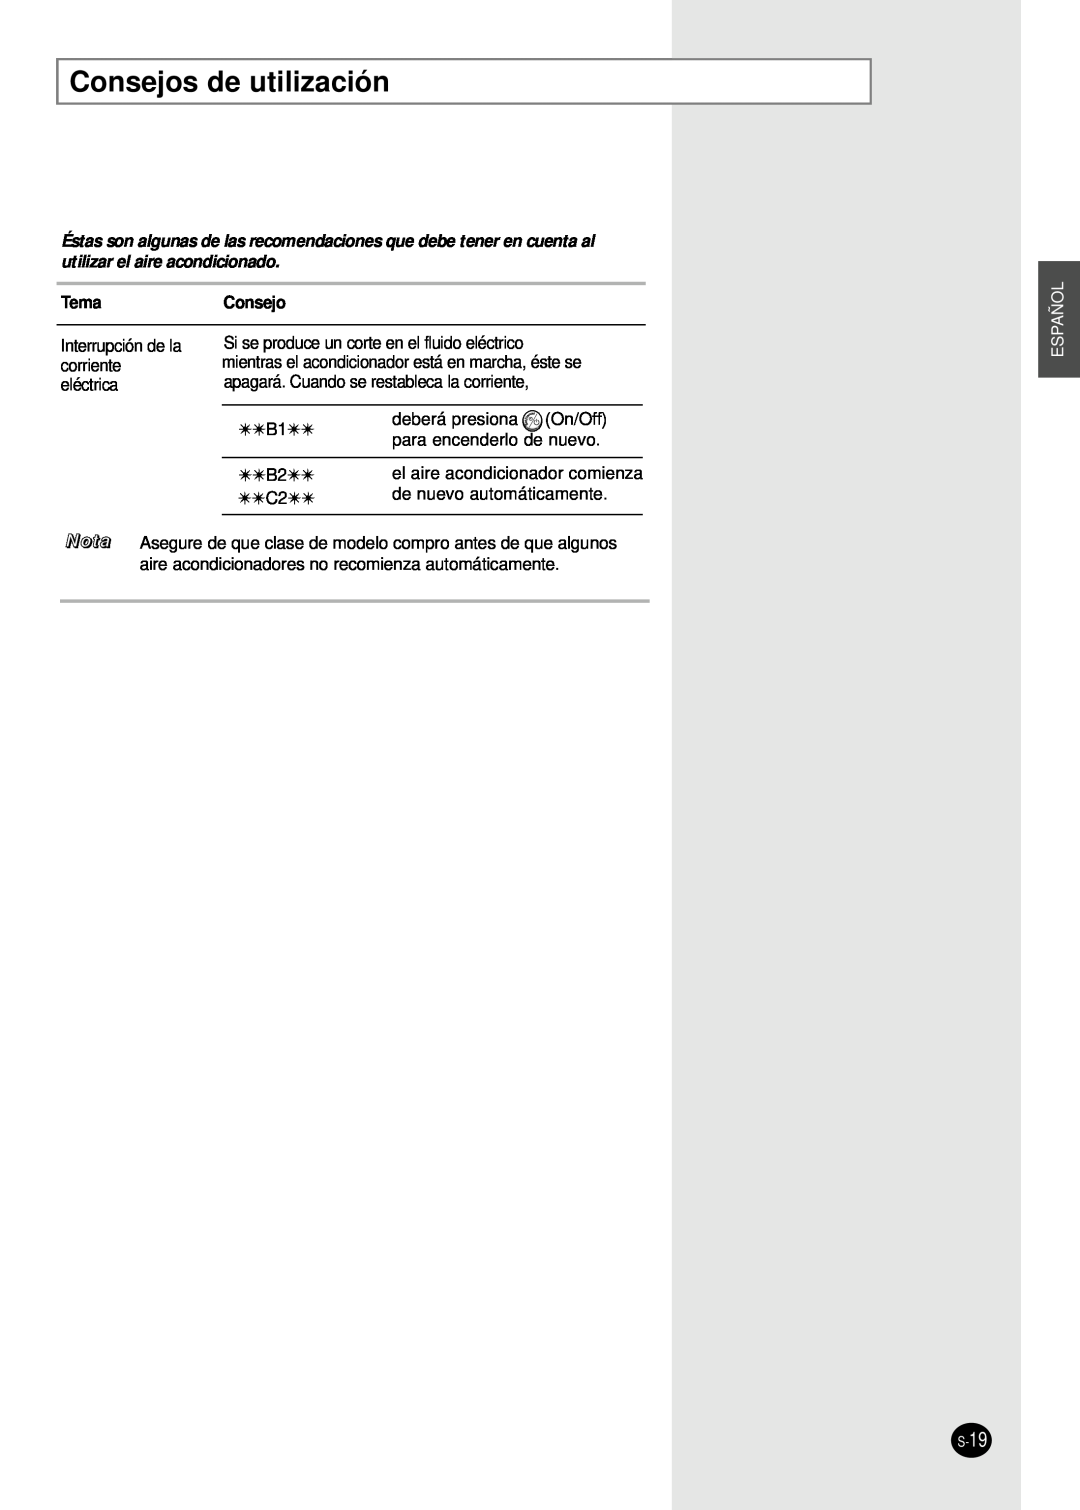 Samsung AM14B1(B2)E07 manuel dutilisation Consejos de utilización, TemaConsejo, Nota, Español 